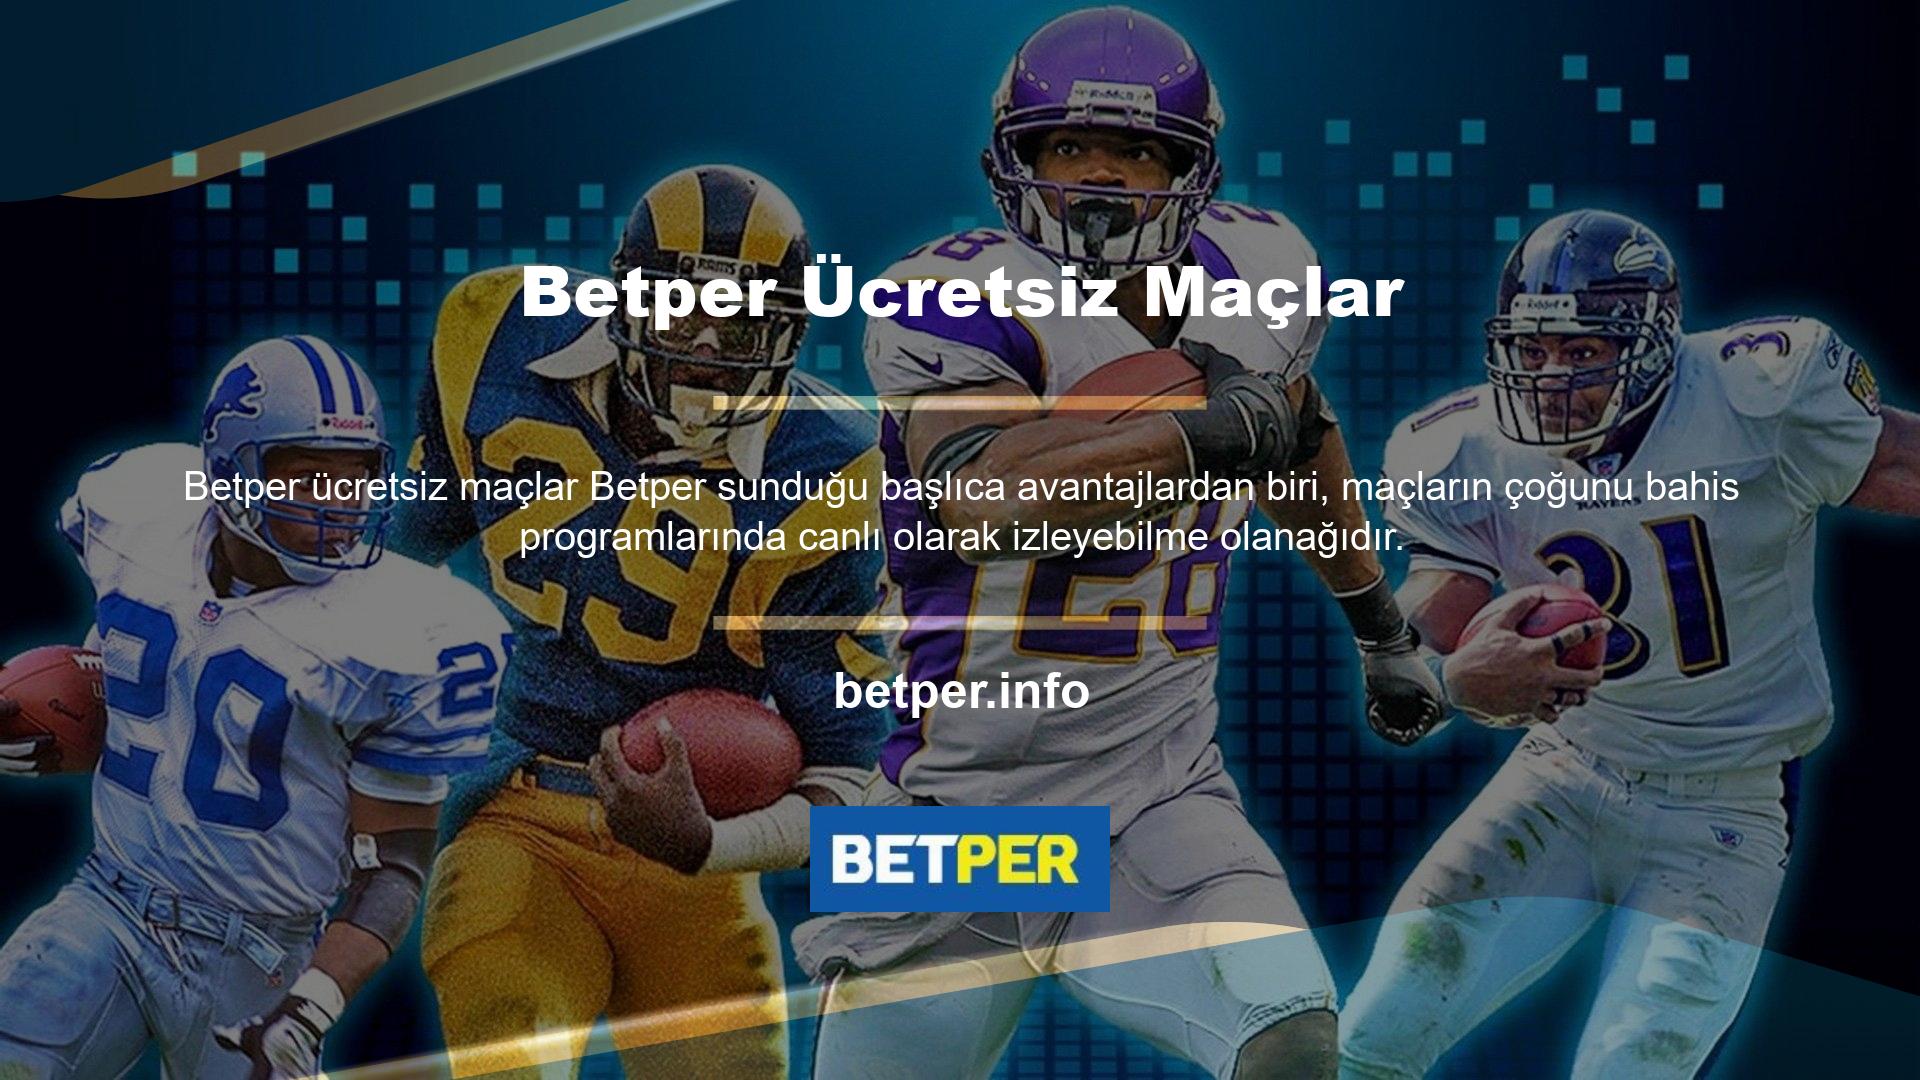 Futbolun yanı sıra Betper canlı tenis ve basketbol maçlarını ücretsiz olarak izleyebilir, maçı izlerken bahis oynayarak kazanma şansınızı artırabilirsiniz